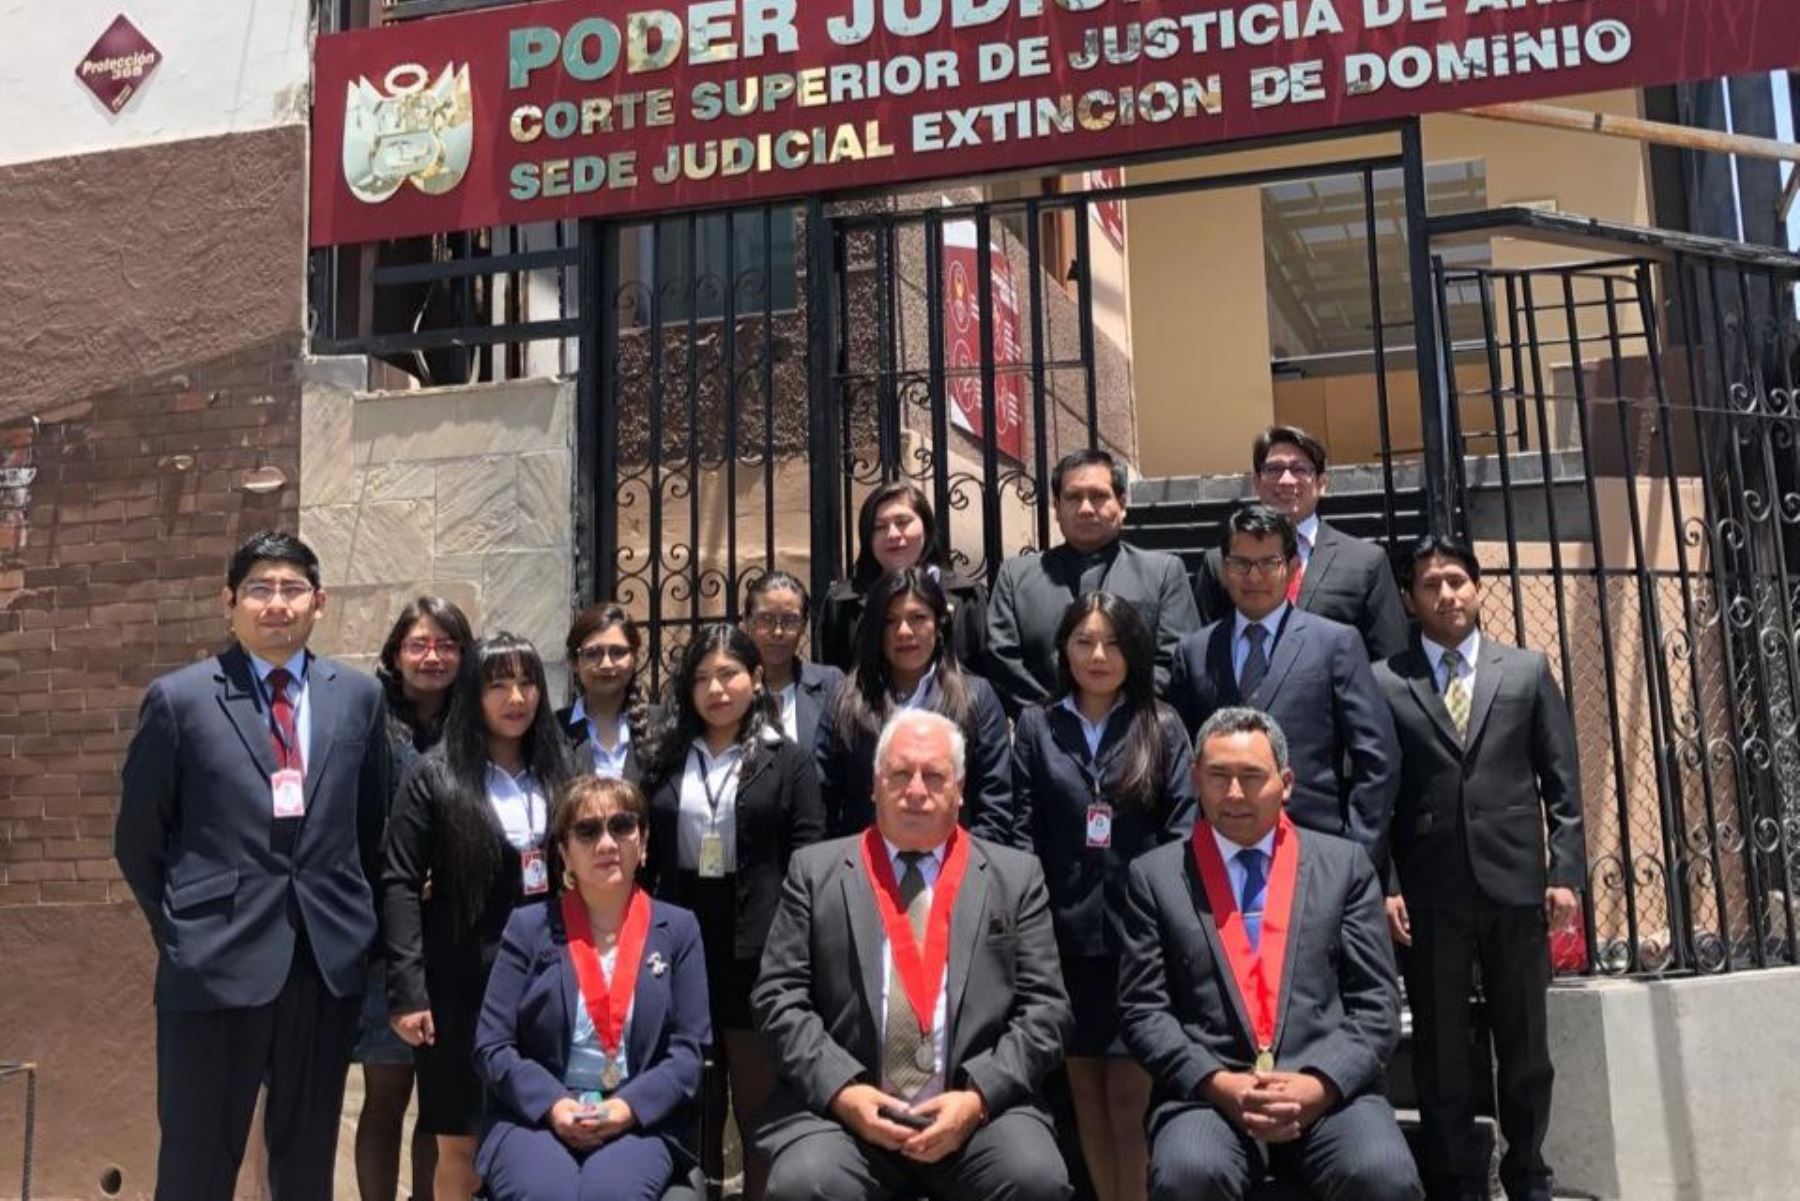 Equipo de la sala superior especializada en extinción de dominio en Arequipa. Foto: Poder Judicial/Difusión.